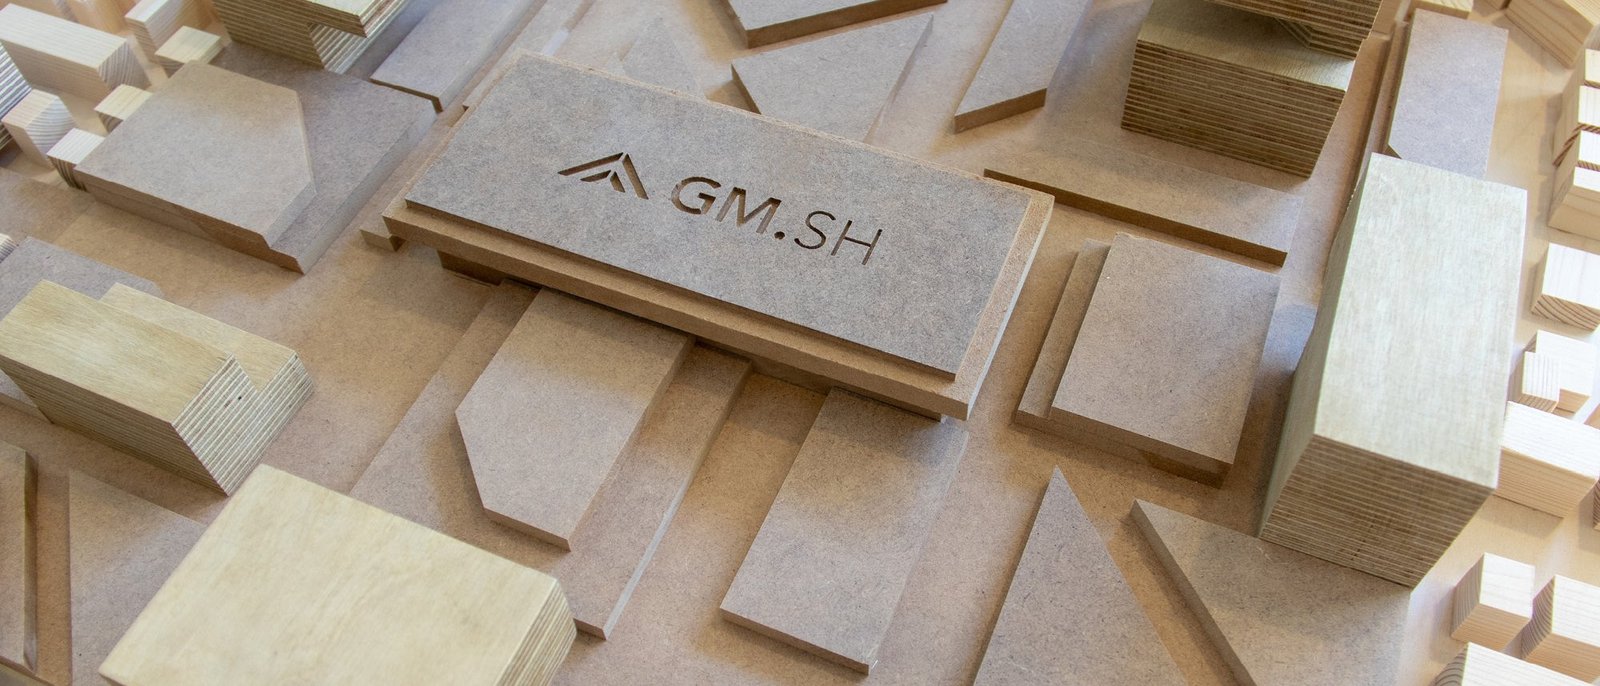 Holzmodell mit GMSH-Logo